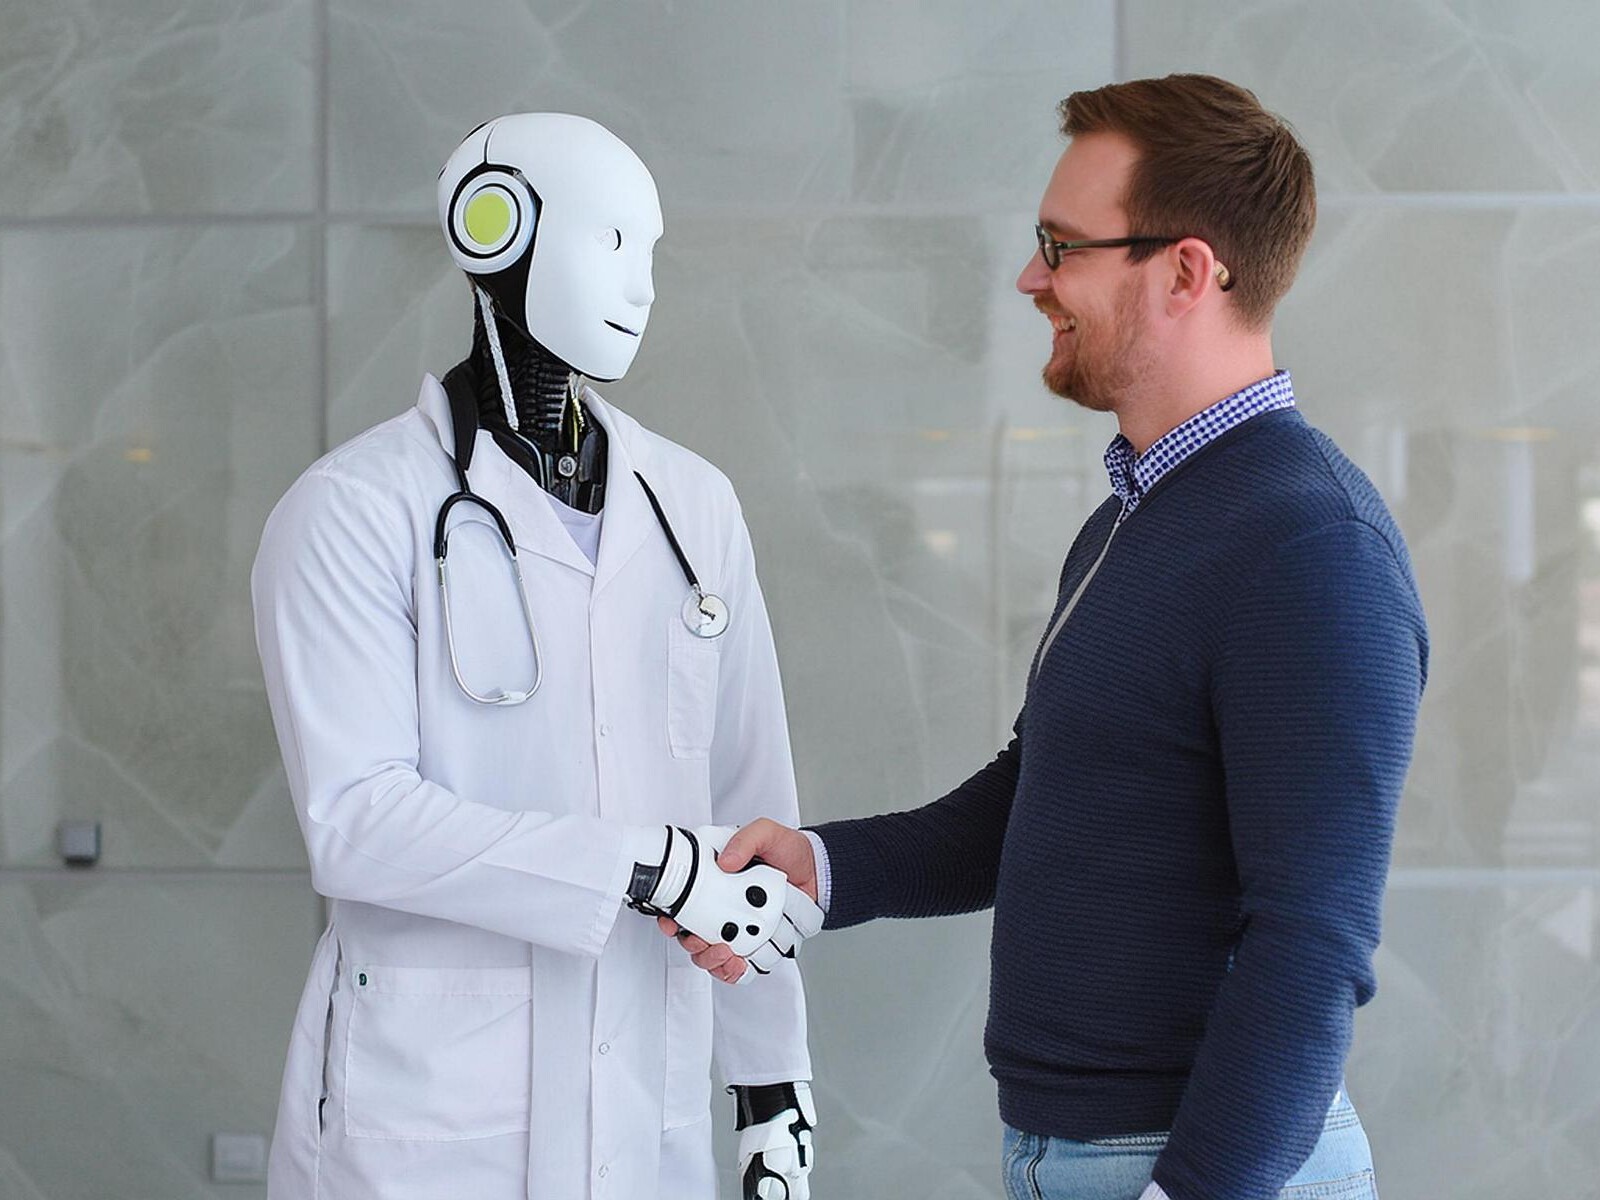 Ein Roboter als Arzt mit Stethoskop um den hals und Arztkittel, er lächelt, rechts neben ihm ein Patient.